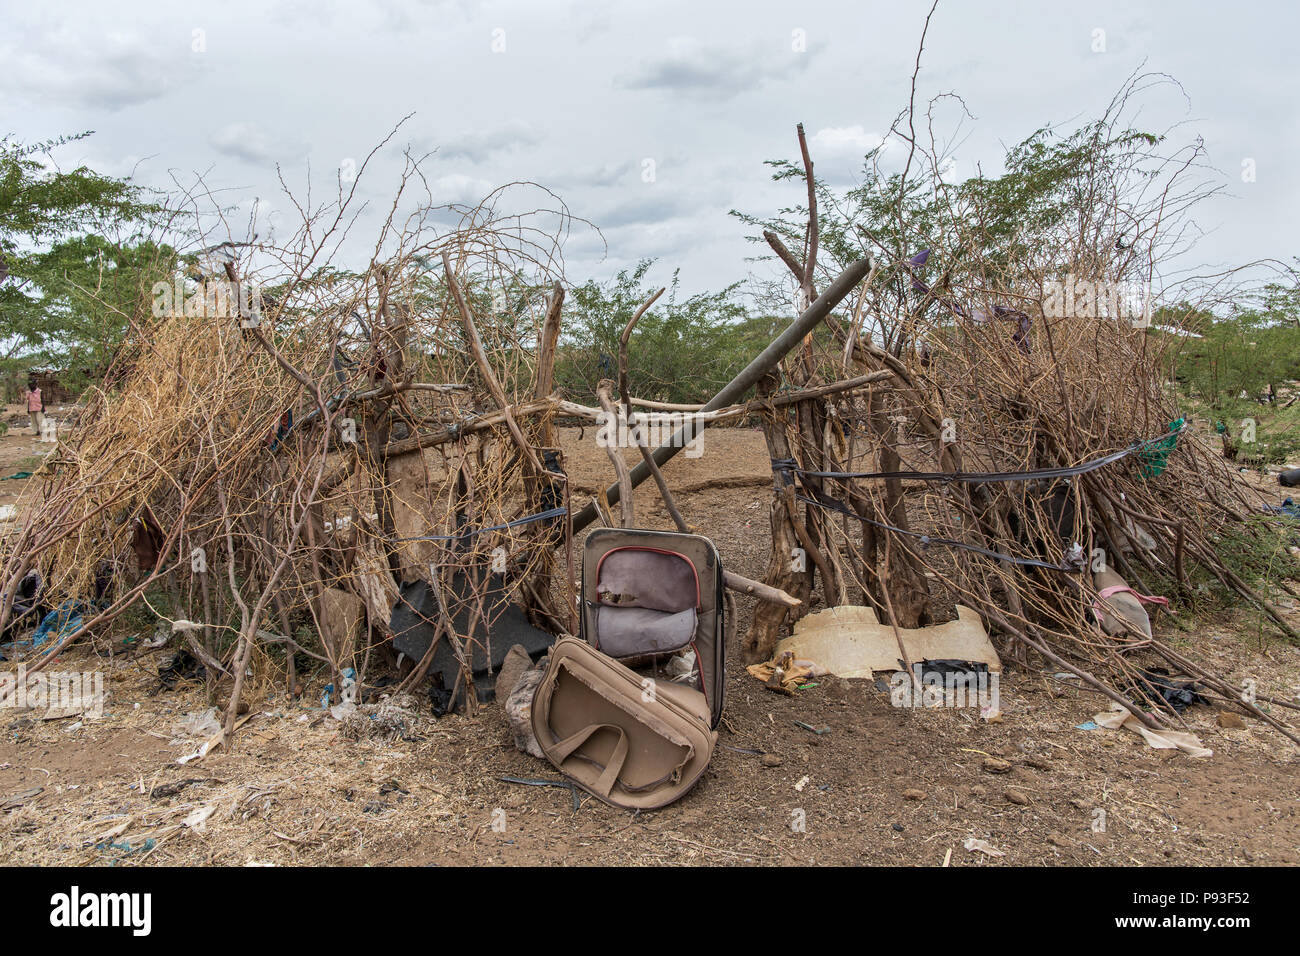 Kakuma, Kenya - Sul bordo del campo profughi di Kakuma, una valigia usurata simbolicamente sorge su un kraal abbandonati. Foto Stock